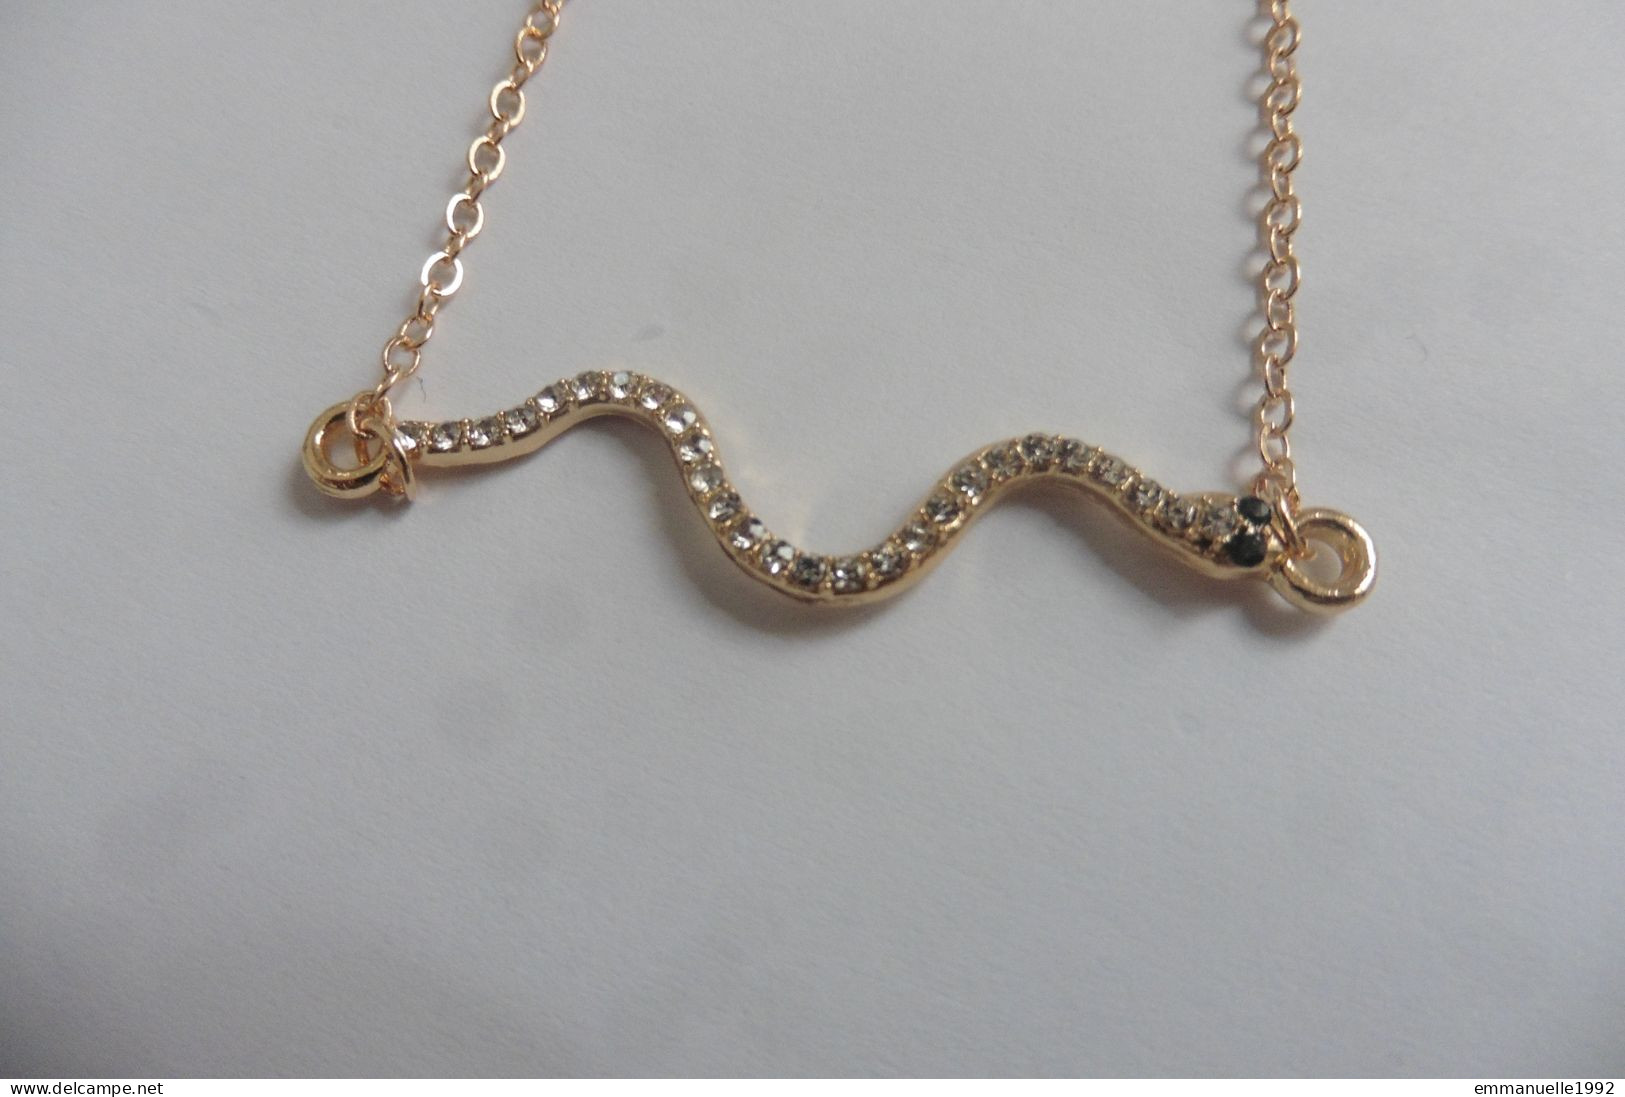 Neuf - Bracelet réglable chaine métal doré serpent serti strass yeux couleur émeraude